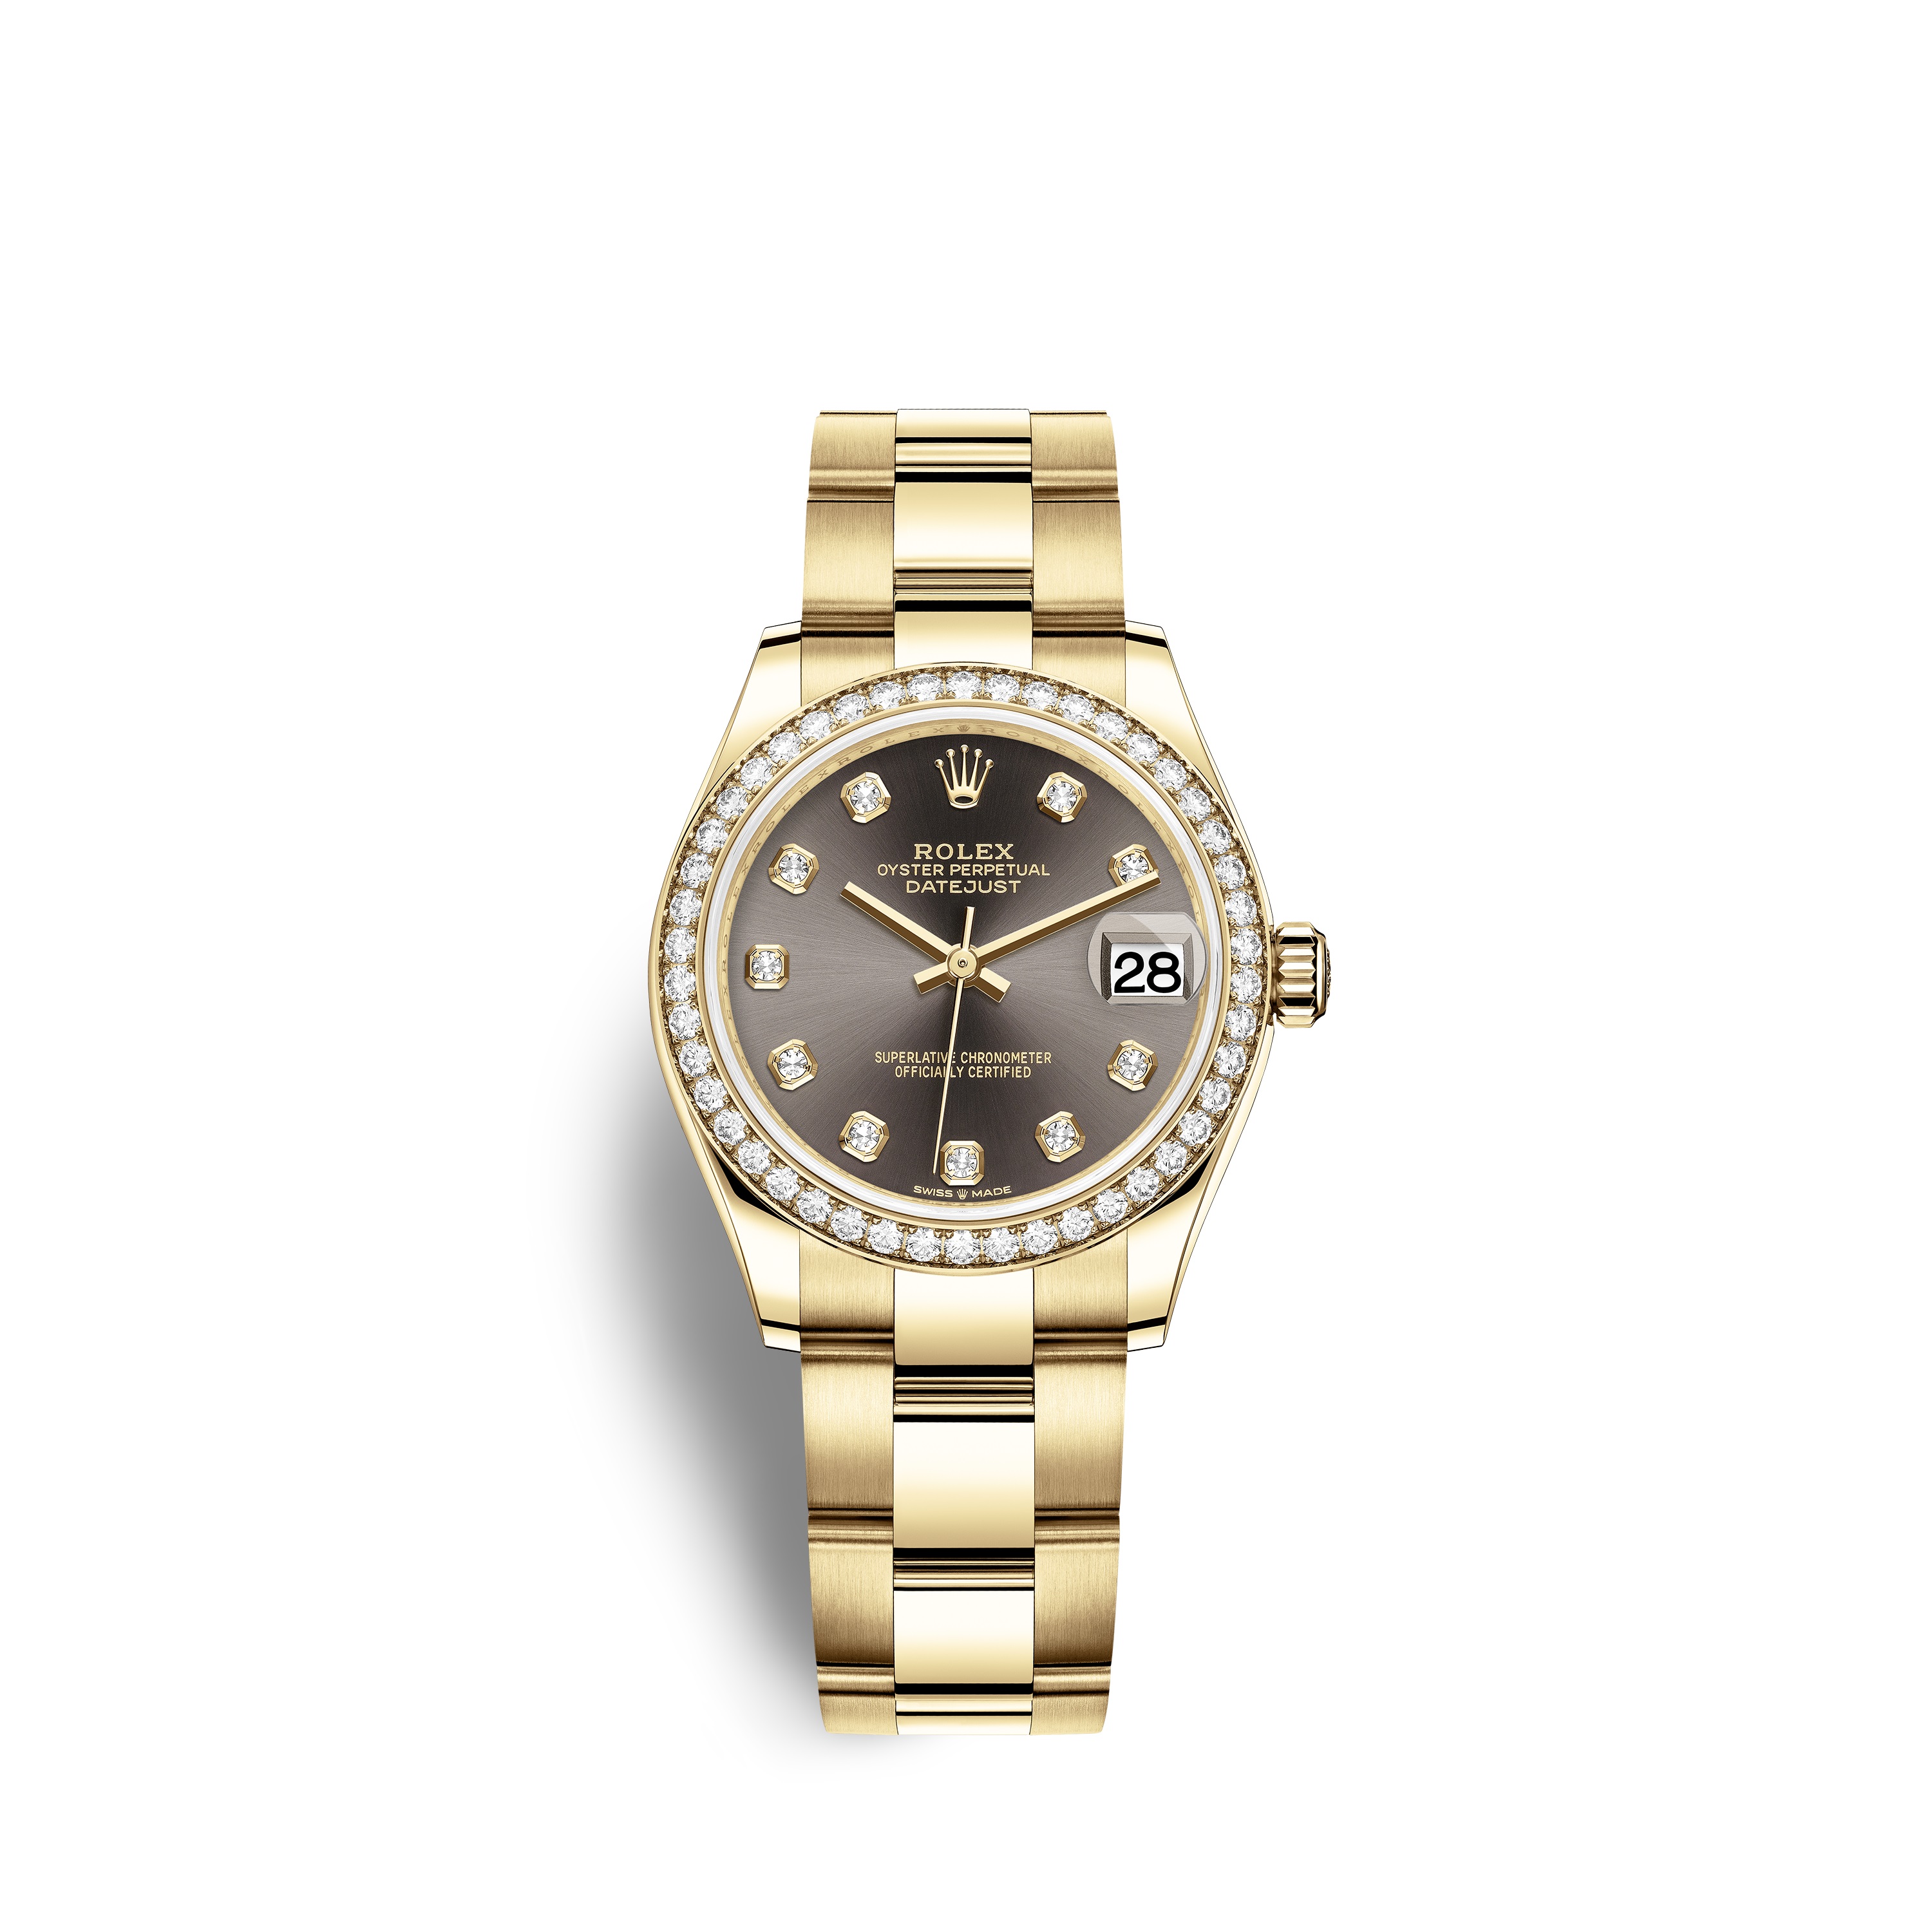 Datejust 31 278288RBR Gold & Diamonds Watch (Dark Grey Set with Diamonds)